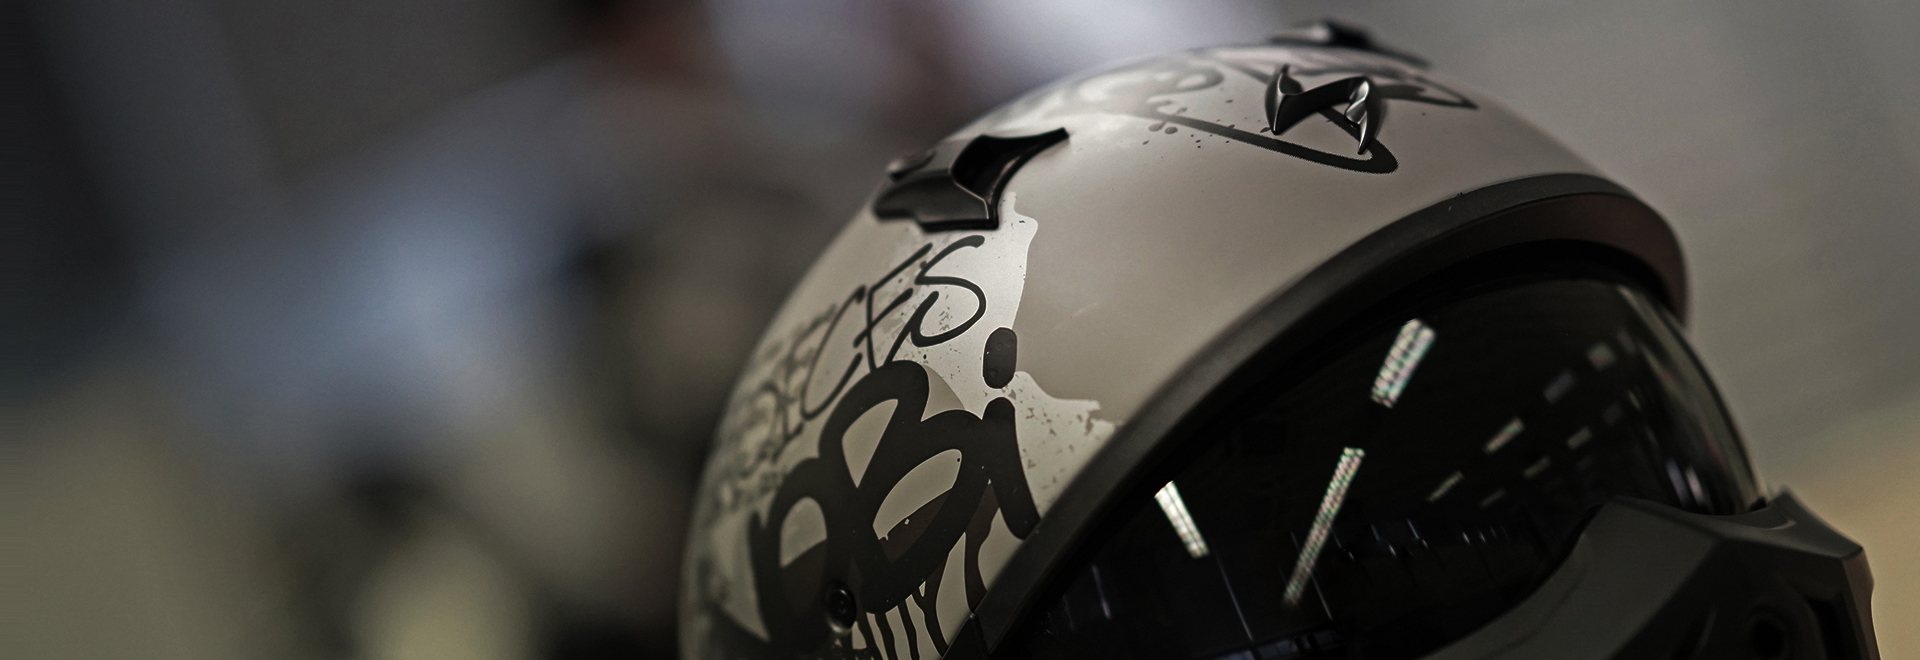 “一盔一带”安全守护行动下 摩托车头盔企业如何加速设计研发？